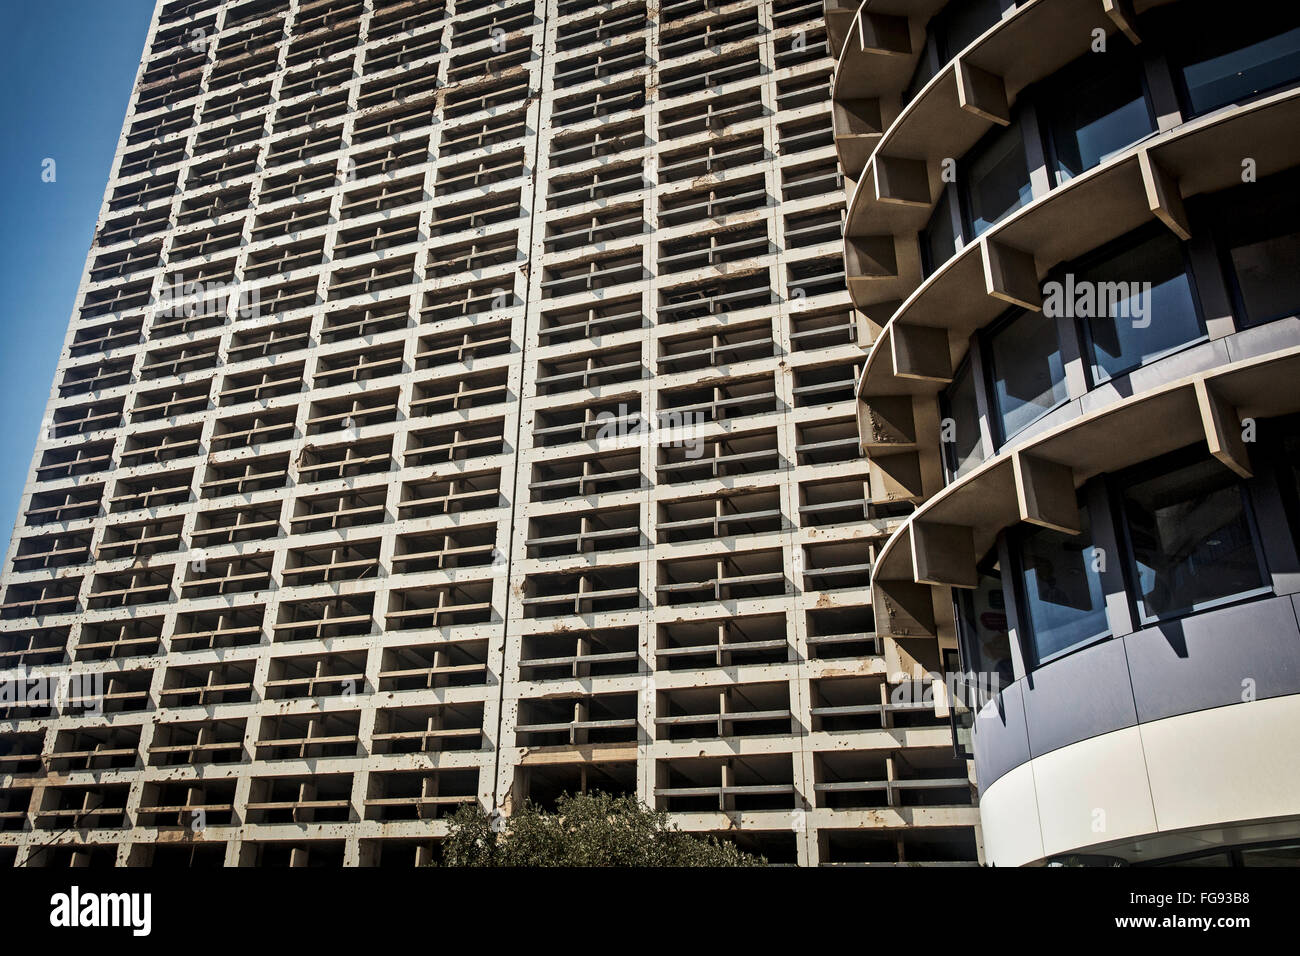 Colpo fino Hilton Hotel combattuto durante la guerra civile a Beirut. Foto Stock